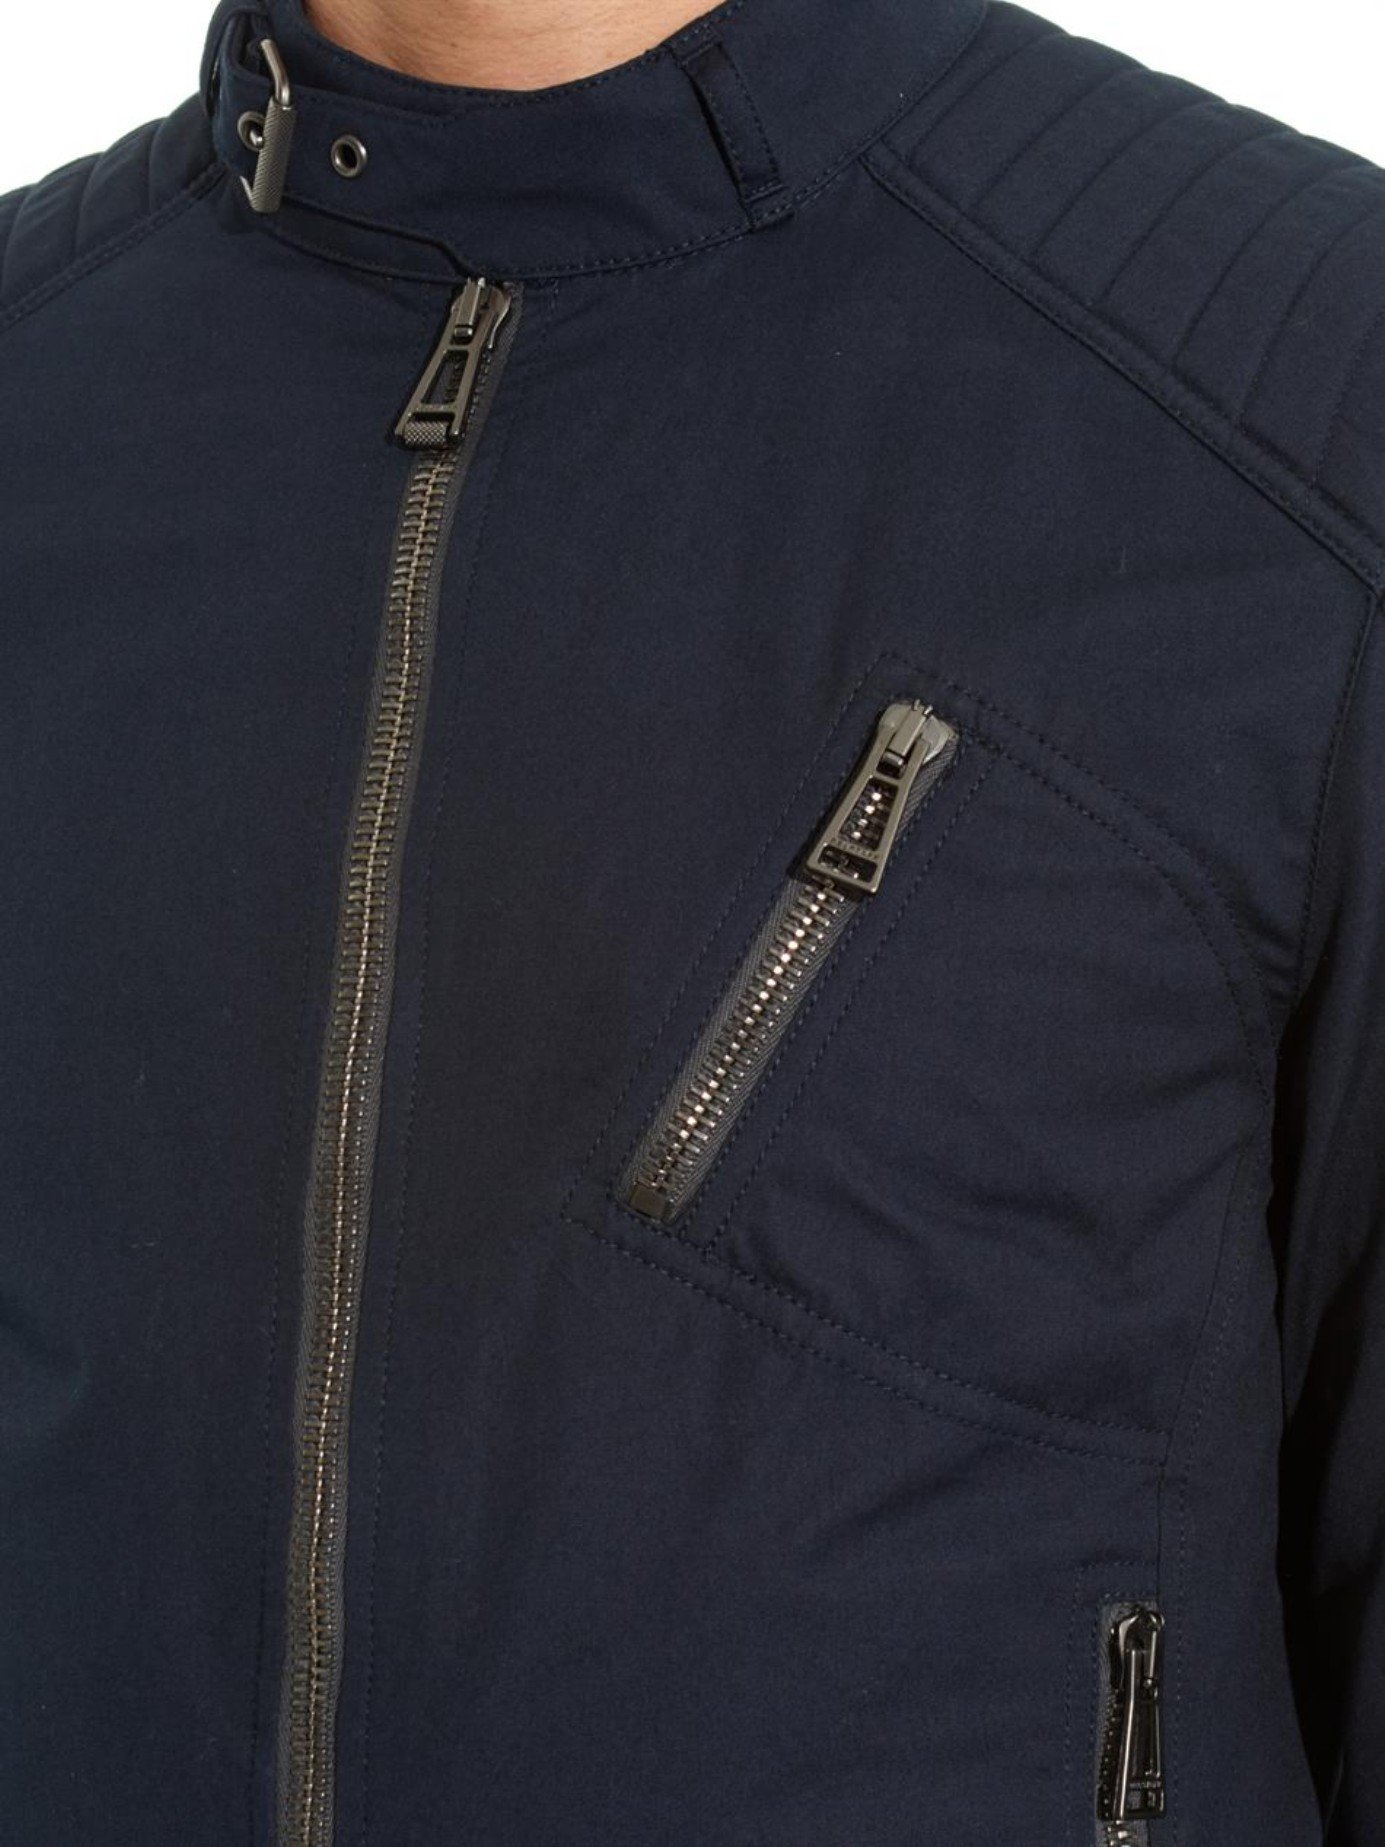 Belstaff K-Racer Cotton Field Jacket in Navy (Blue) for Men - Lyst